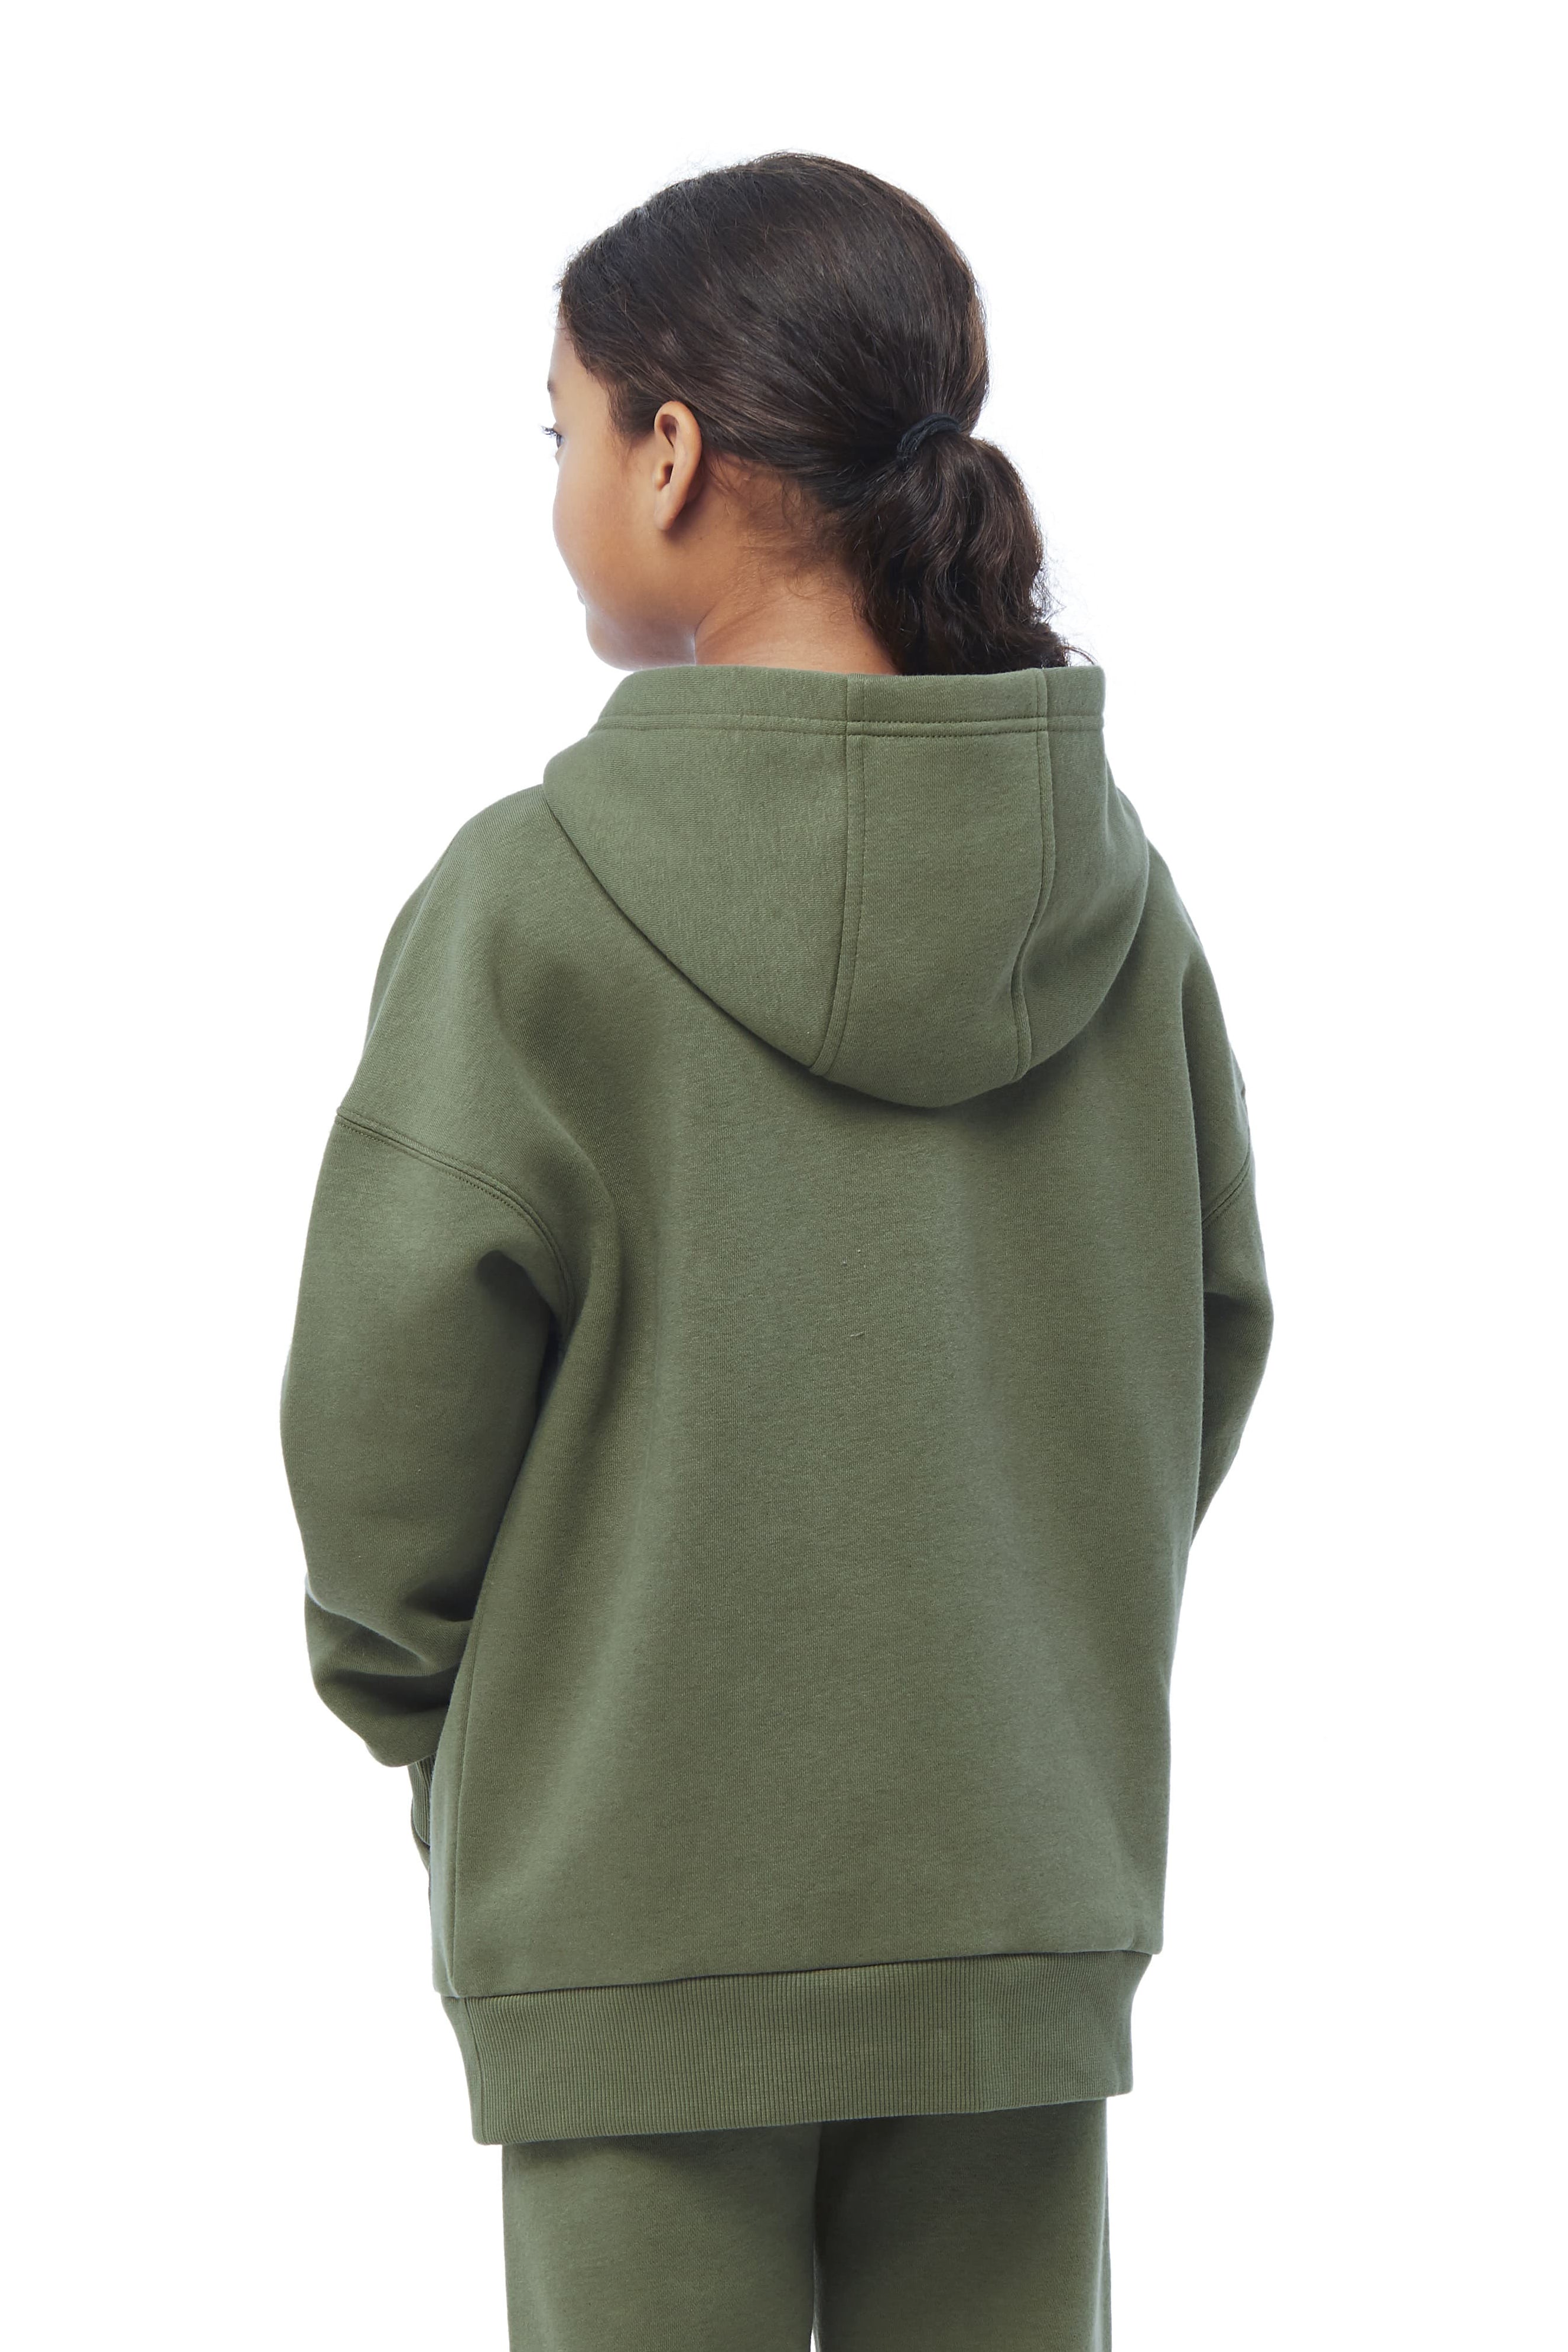 Kids Cooper fleece hoodie in olive